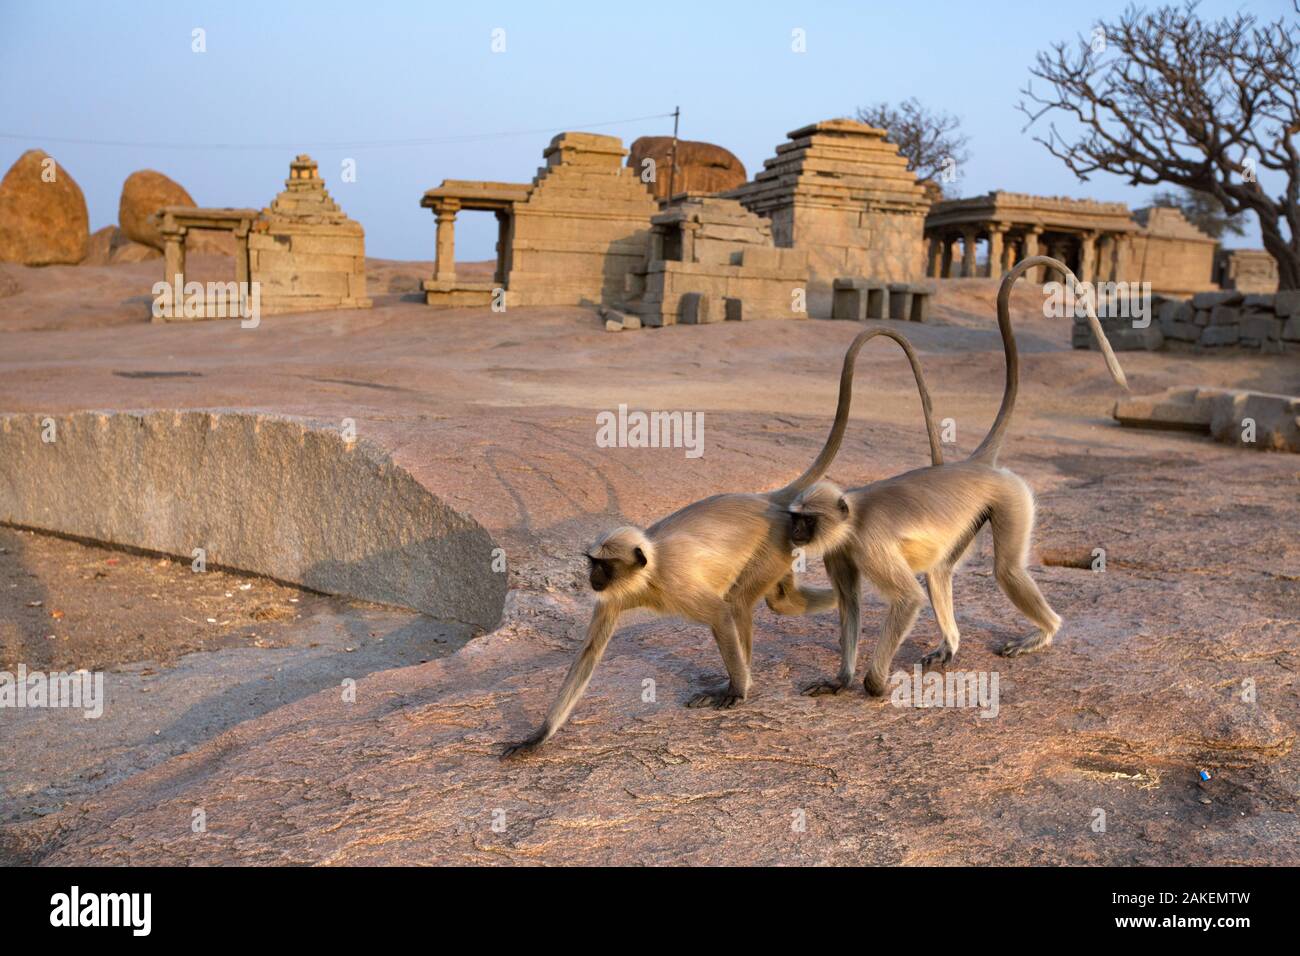 Les plaines du sud de langurs gris (Semnopithecus dussumieri). marche chez les vieux temples en ruine . Hampi, Karnataka, Inde. Banque D'Images